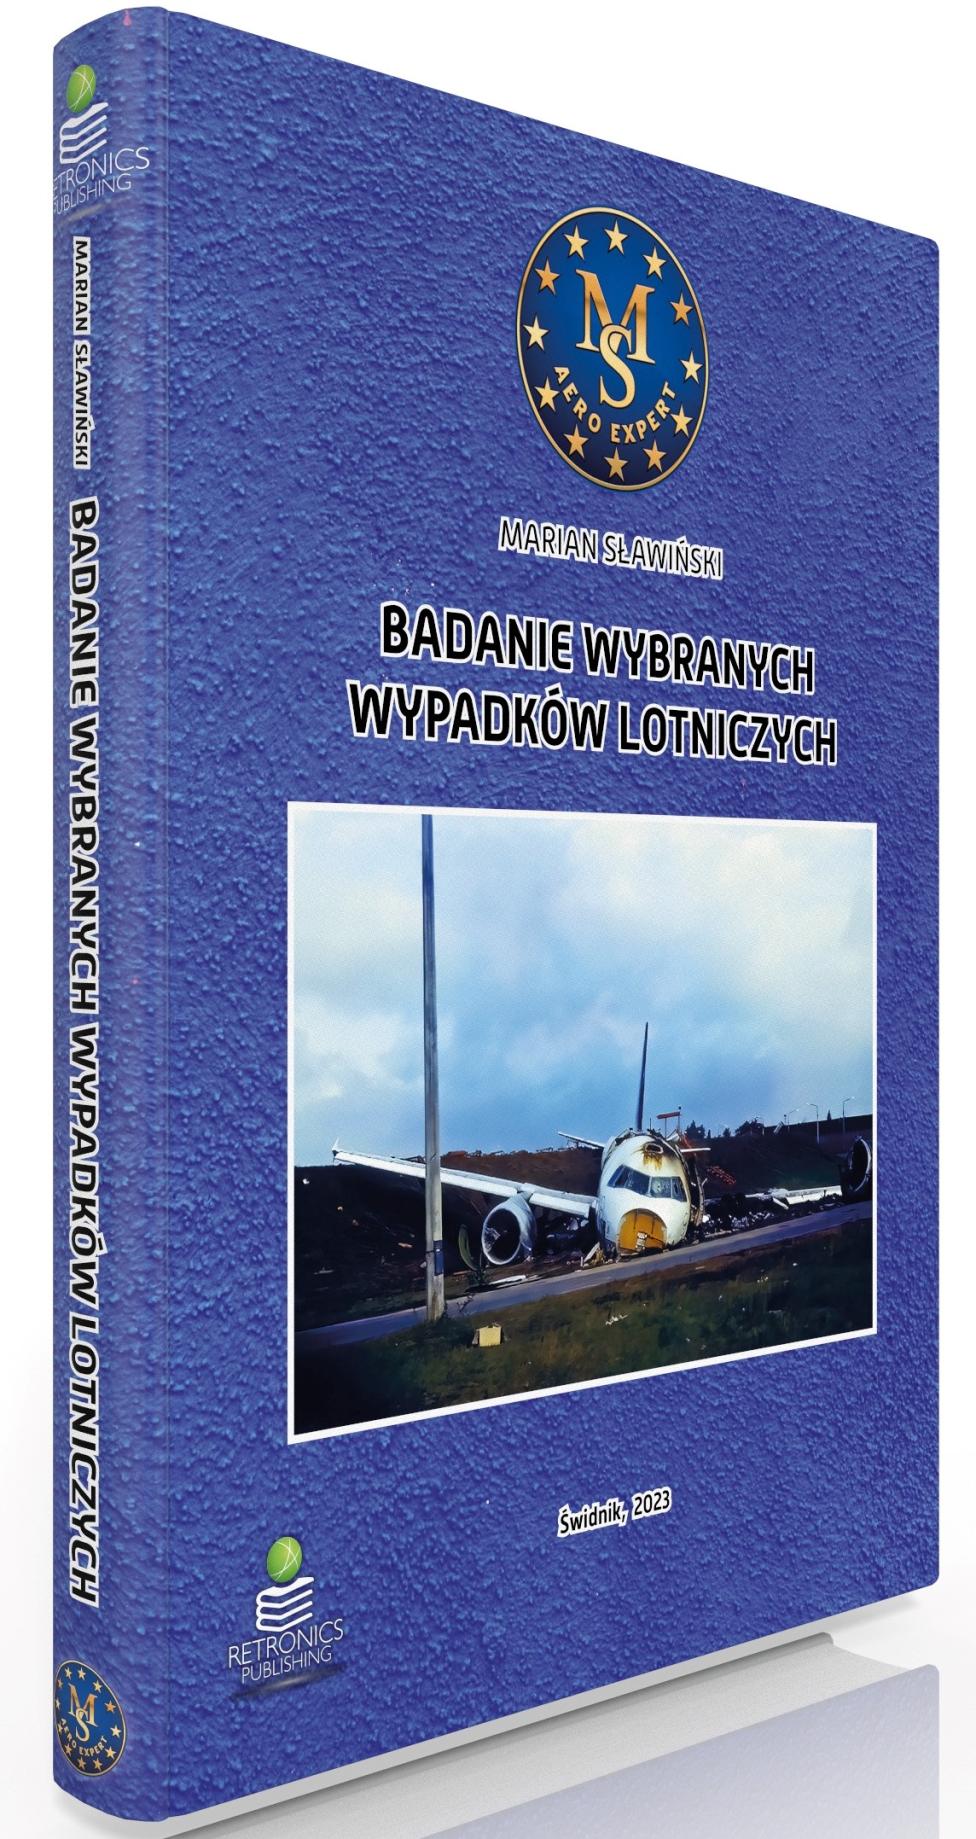 Książka "Badanie Wybranych Wypadków Lotniczych" (fot. Retronics Publishing)